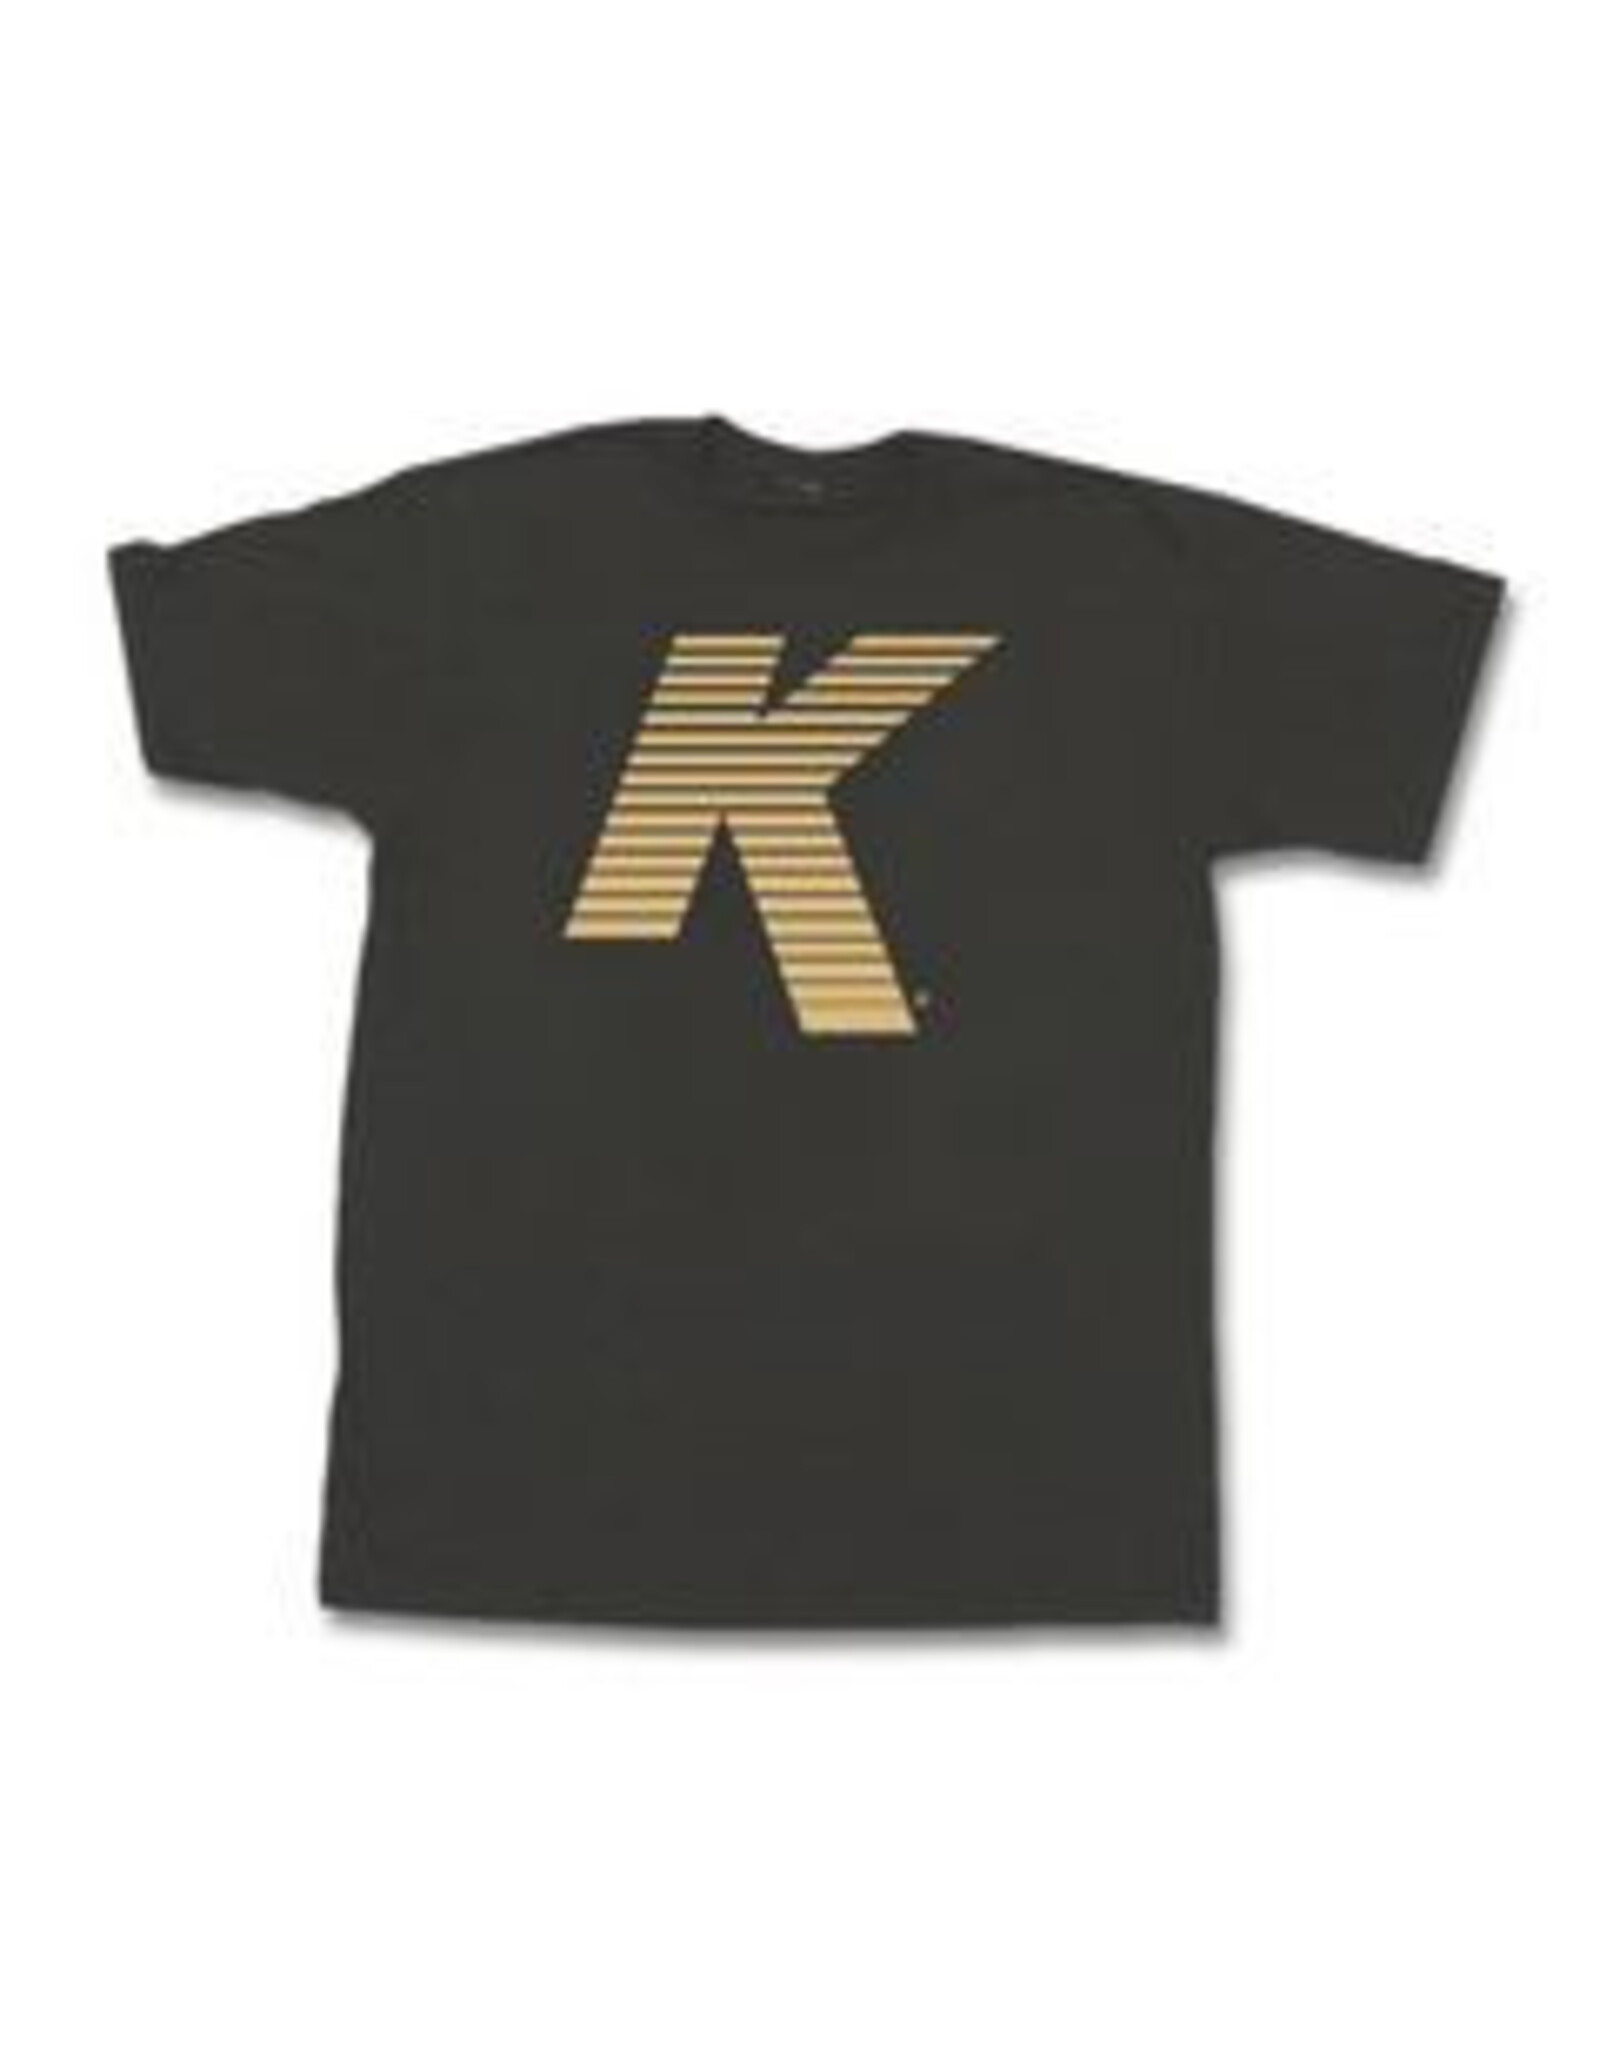 Zildjian ZILDJIAN T-Shirt, Vented K Log